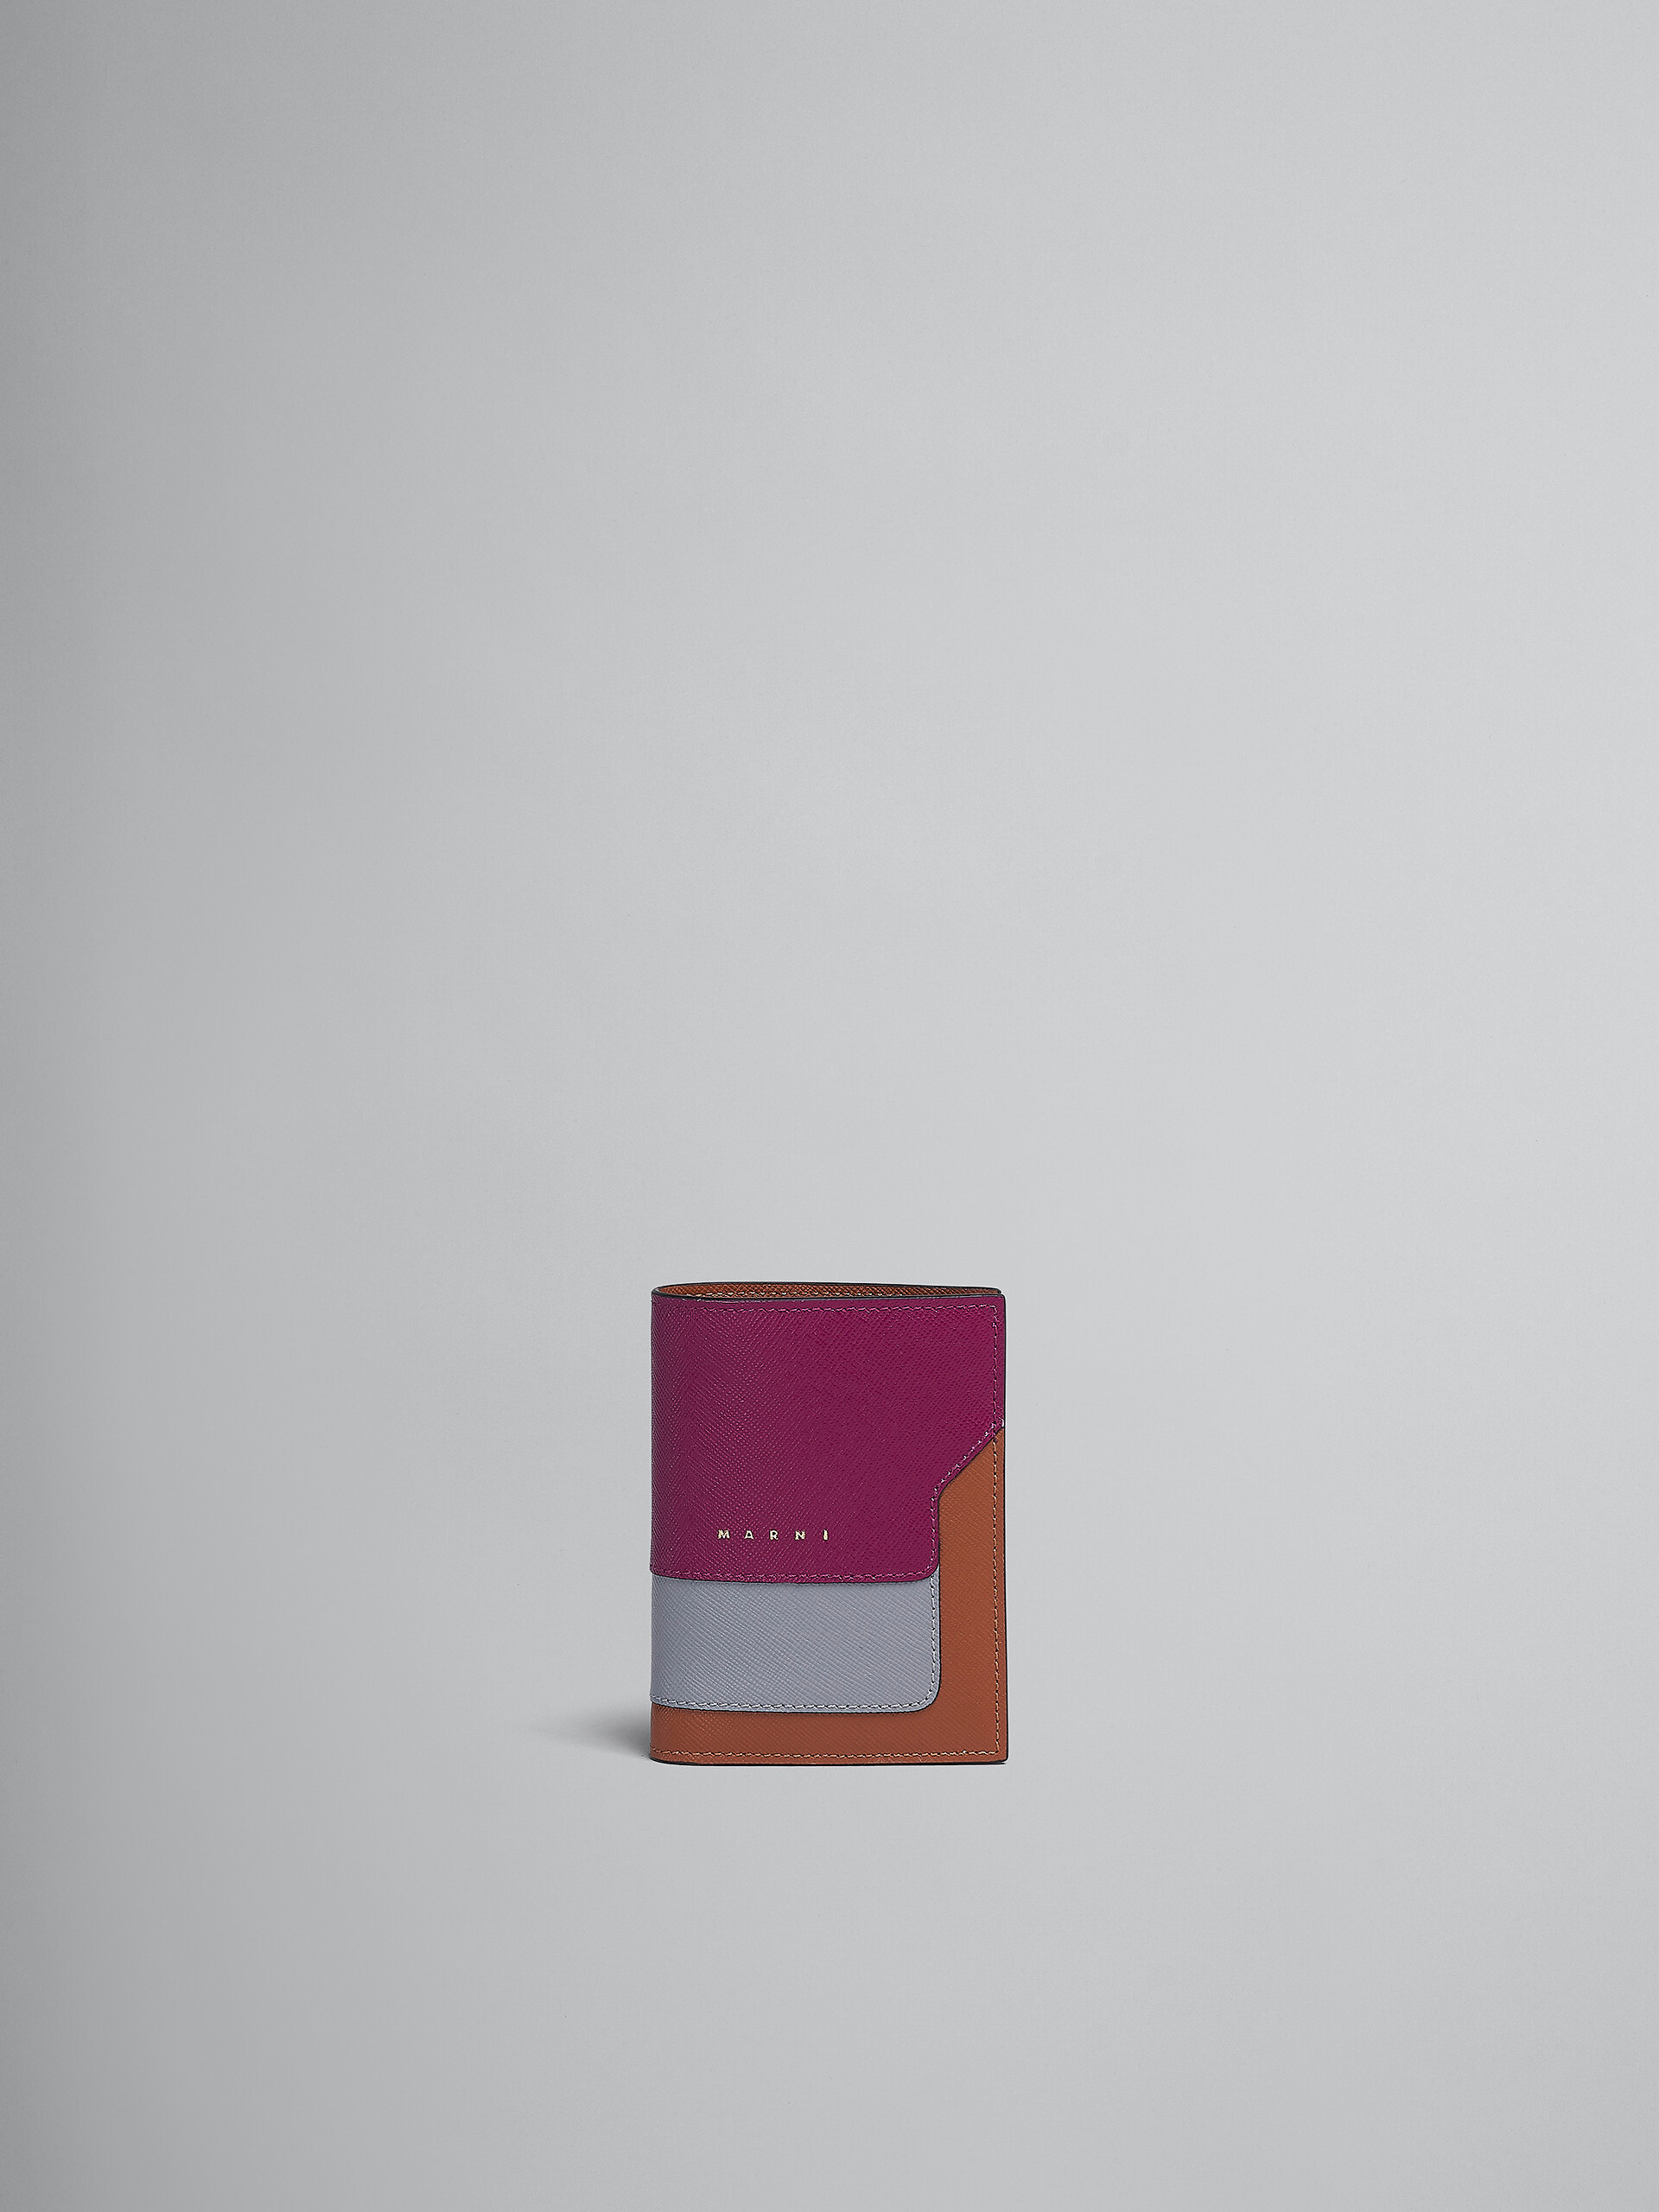 Zweifache Faltbrieftasche aus Saffiano-Leder in Violett, Grau und Braun - Brieftaschen - Image 1